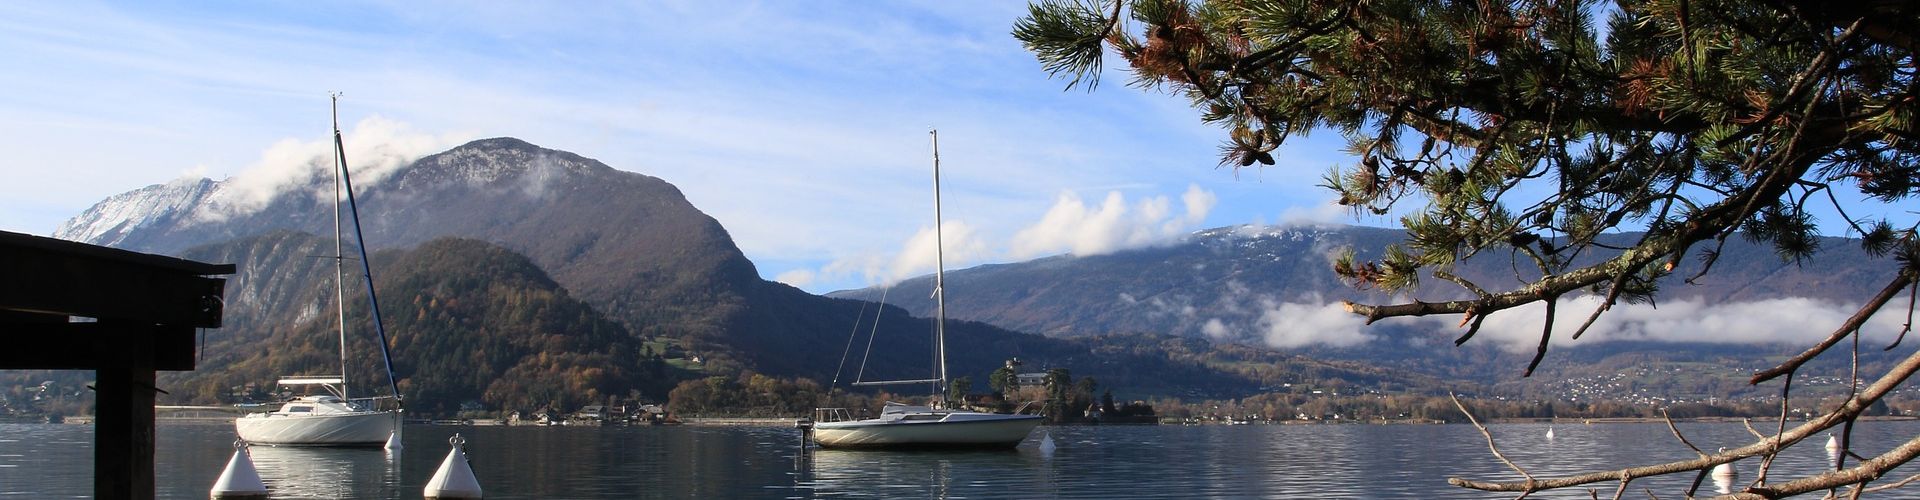 Lac Annecy proche Talloires bateaux nature